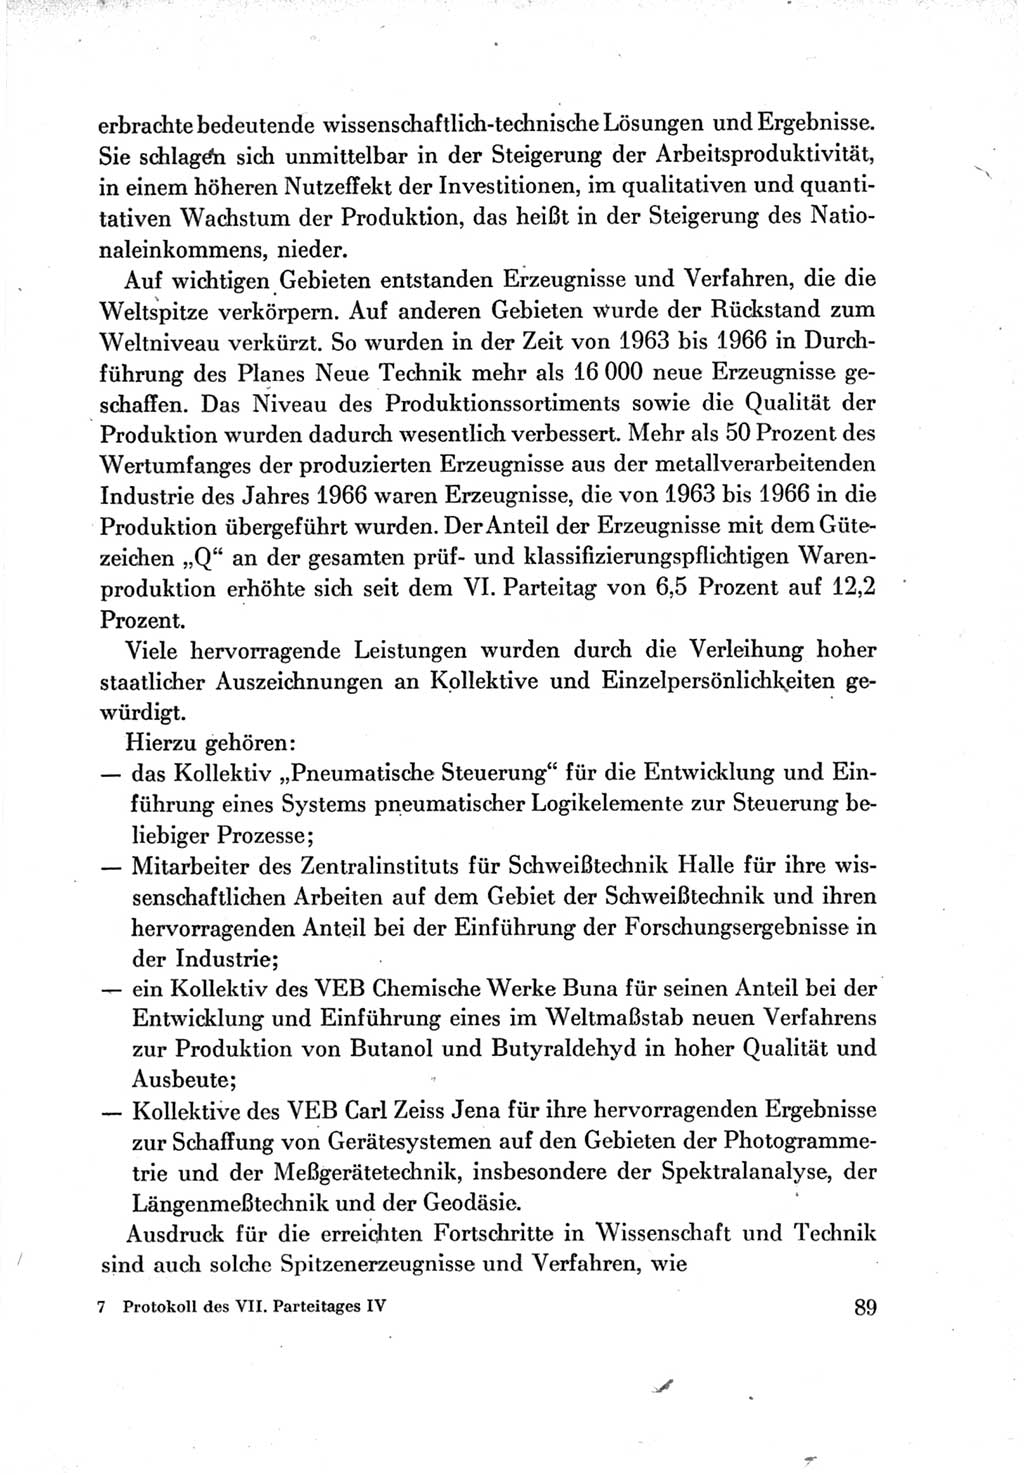 Protokoll der Verhandlungen des Ⅶ. Parteitages der Sozialistischen Einheitspartei Deutschlands (SED) [Deutsche Demokratische Republik (DDR)] 1967, Band Ⅳ, Seite 89 (Prot. Verh. Ⅶ. PT SED DDR 1967, Bd. Ⅳ, S. 89)